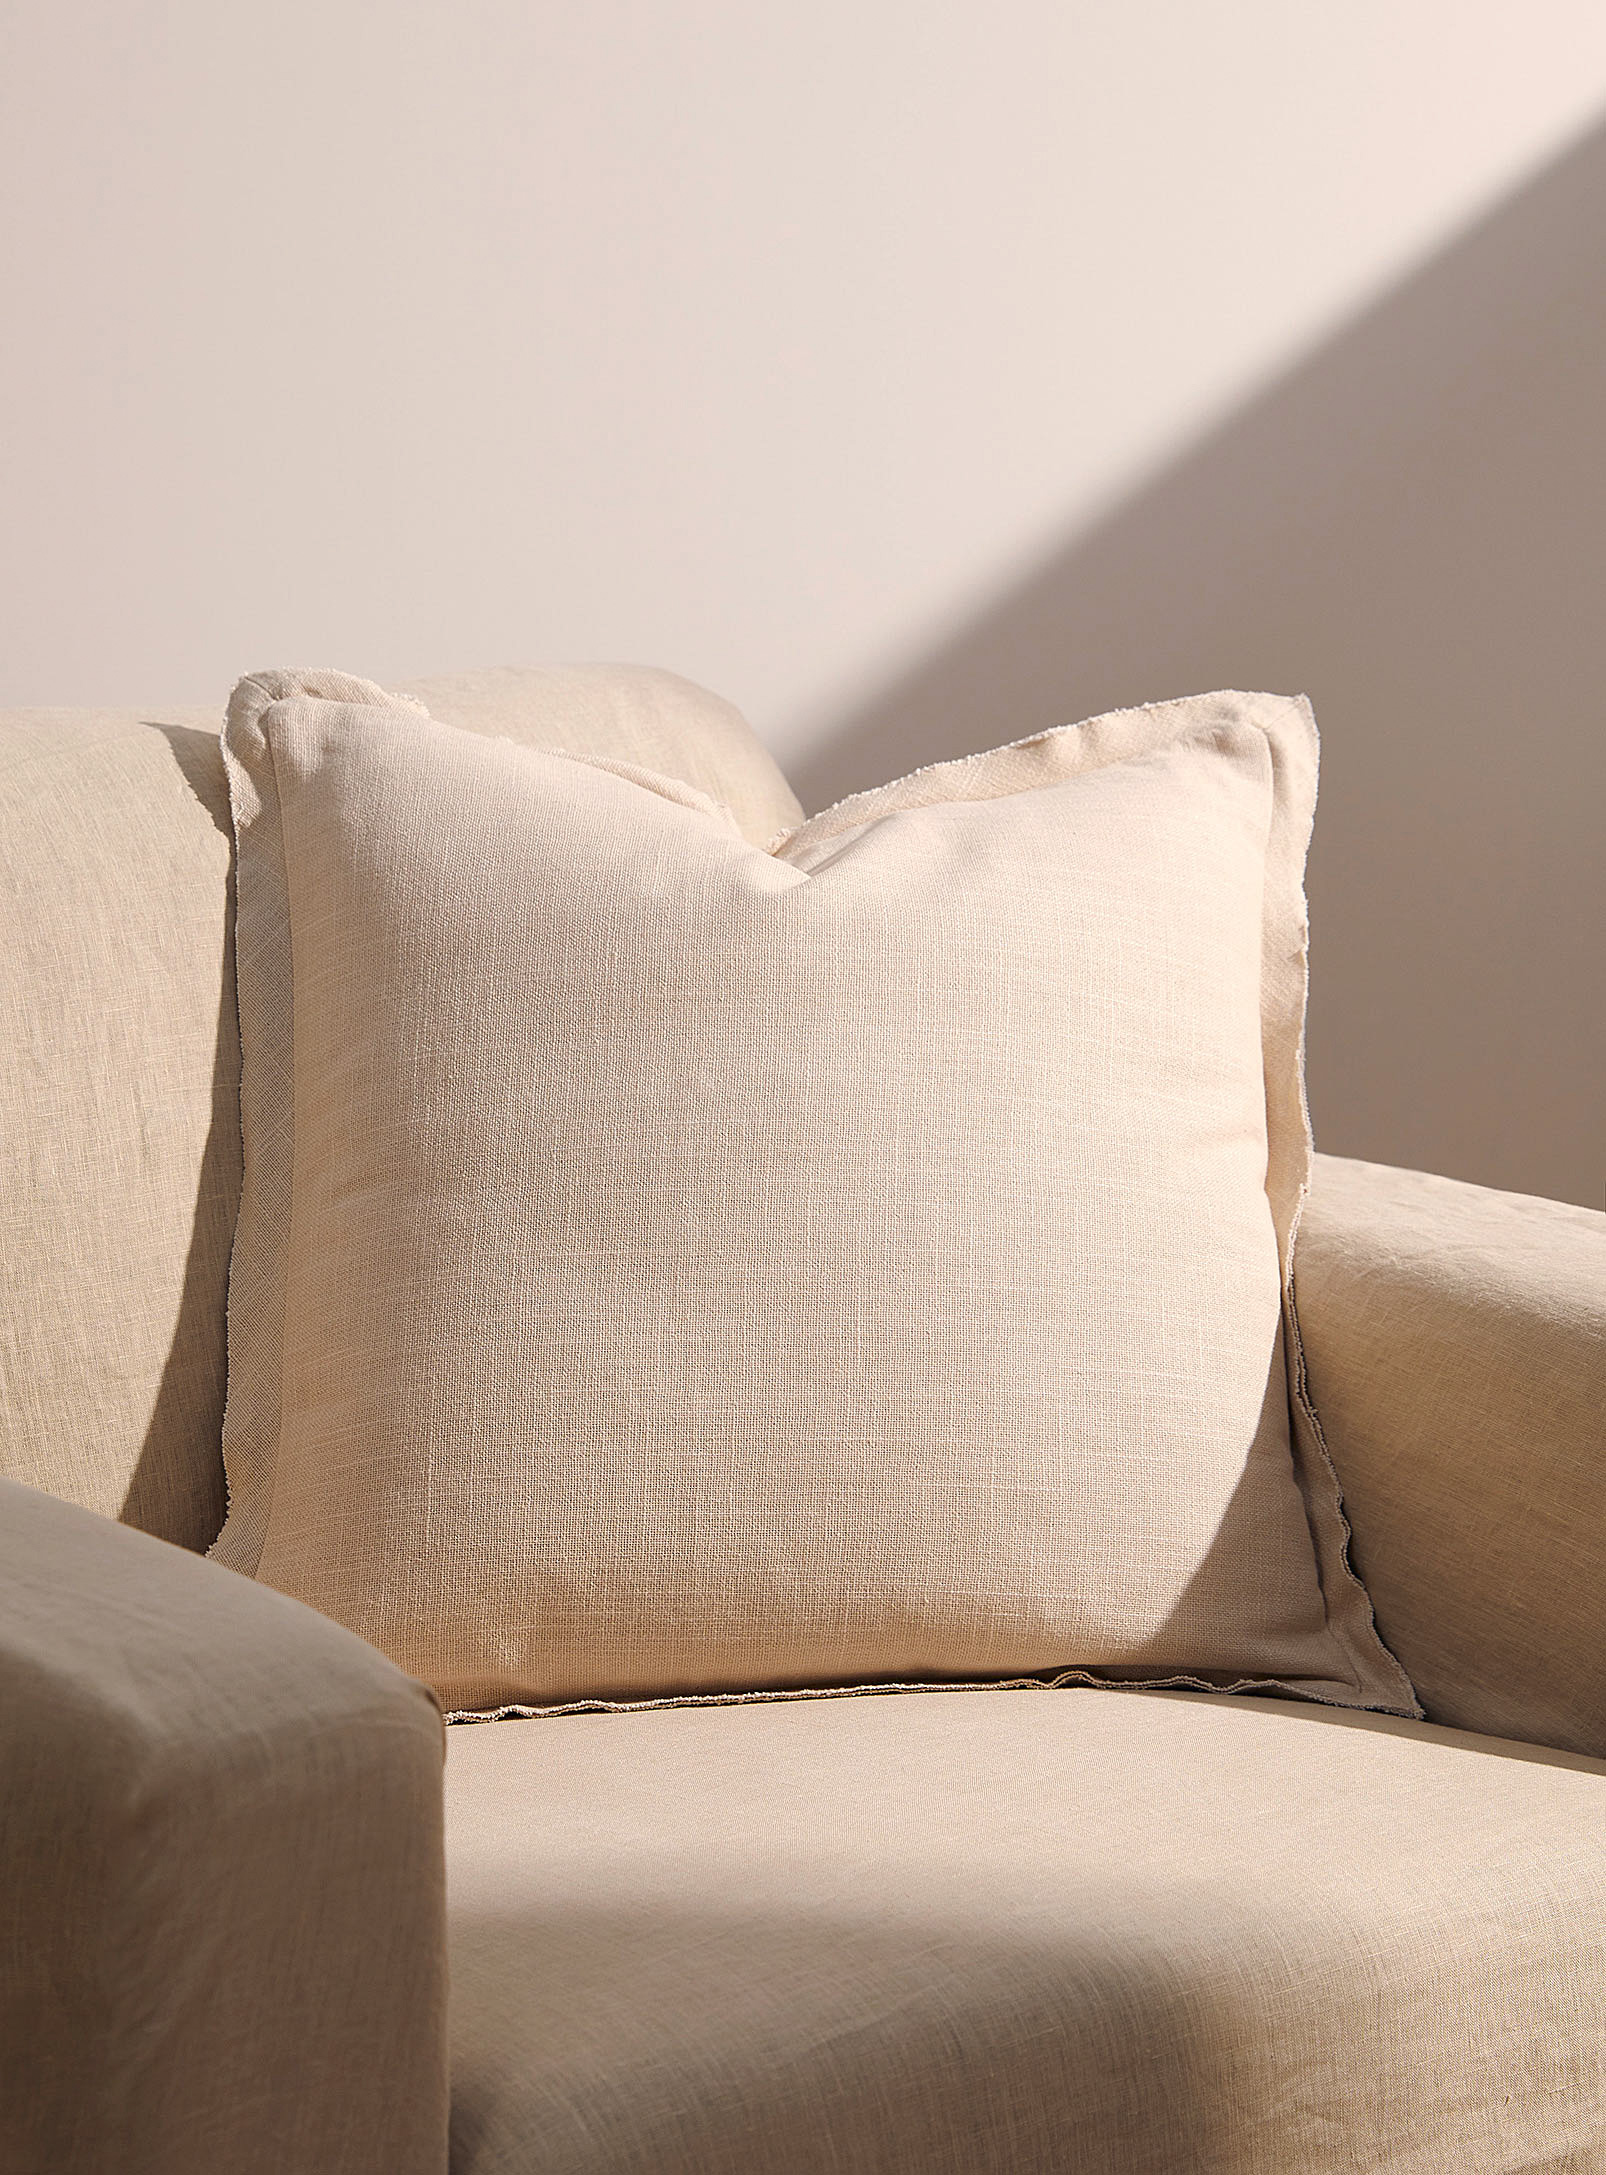 Simons Maison Plain Linen-like Cushion 45 X 45 Cm In Cream Beige